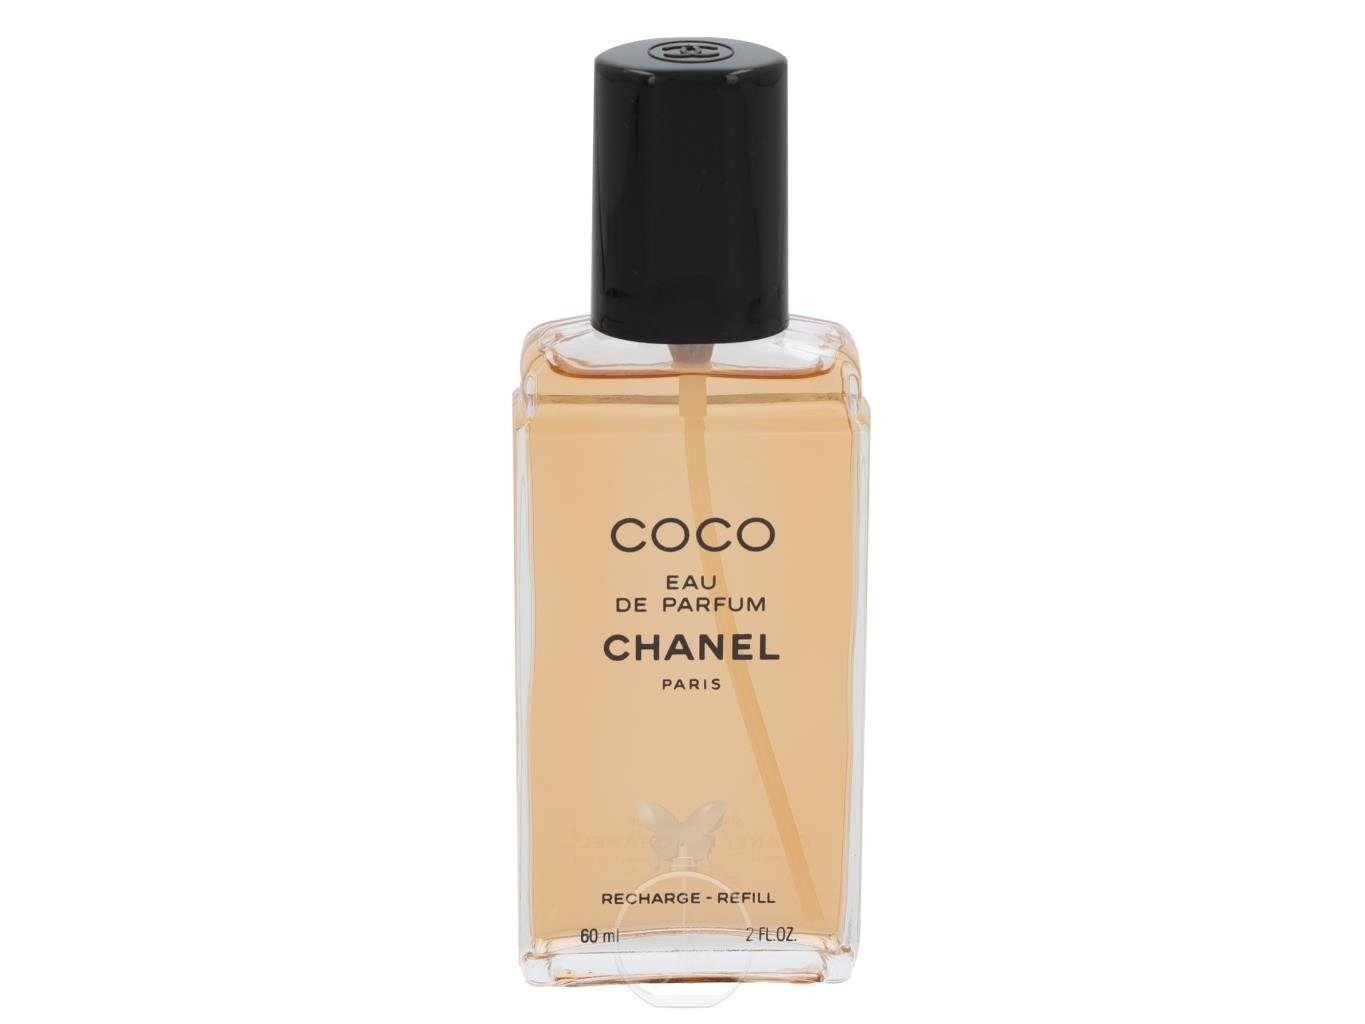 CHANEL Eau de Parfum Chanel Coco Eau de Parfum Nachfüller 60 ml